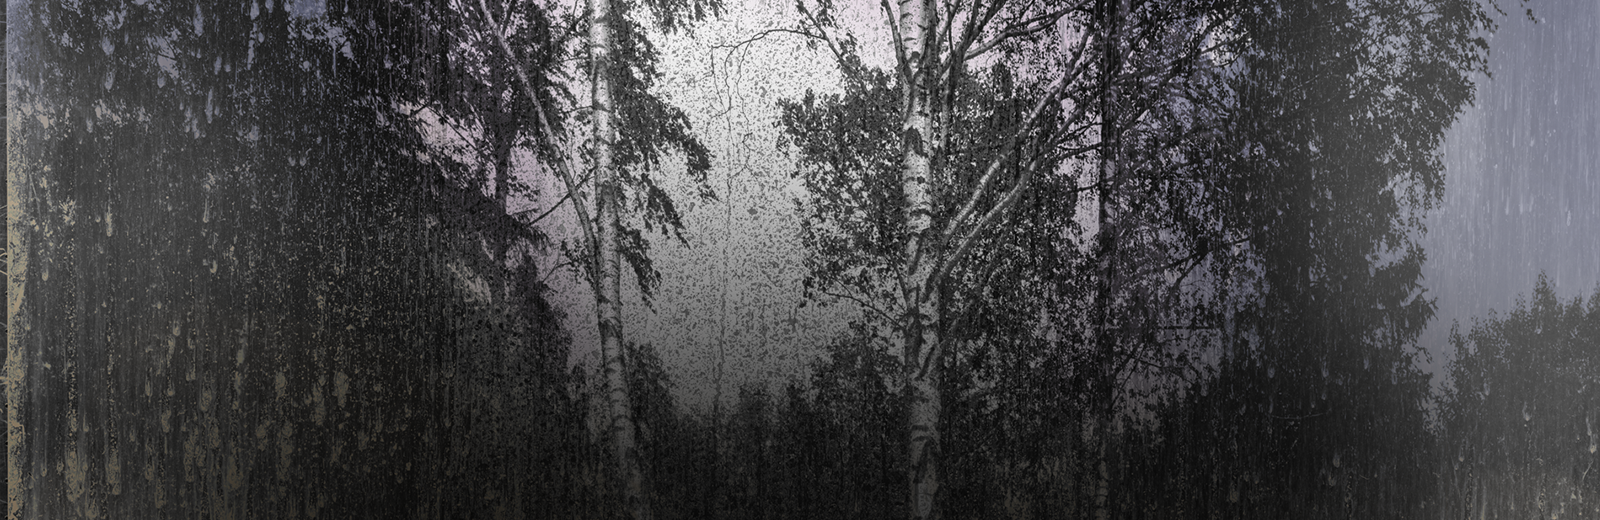 Matthew Brandt. Orphic Forest 